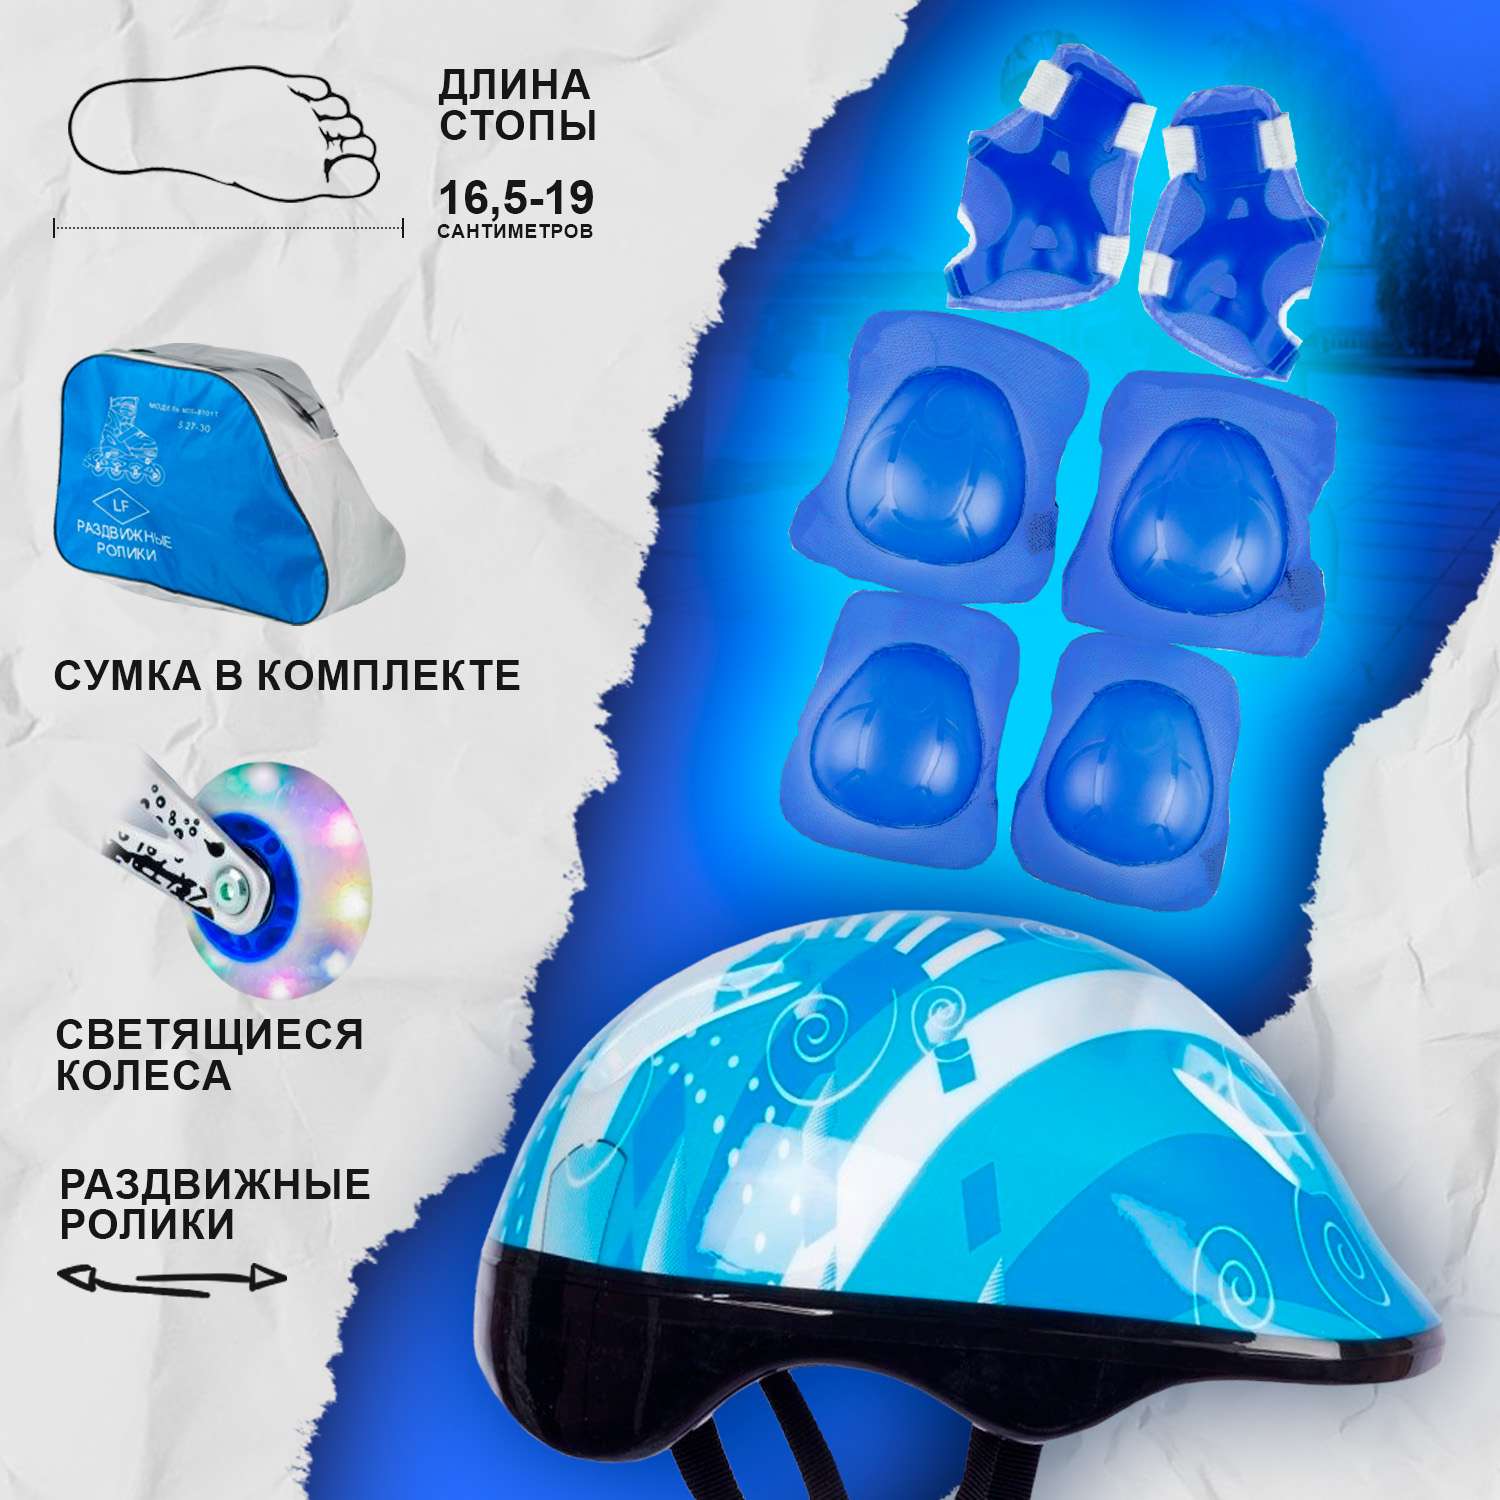 Роликовые коньки BABY STYLE раздвижный 27-30 S шлем и защита светящиеся колеса синий - фото 2